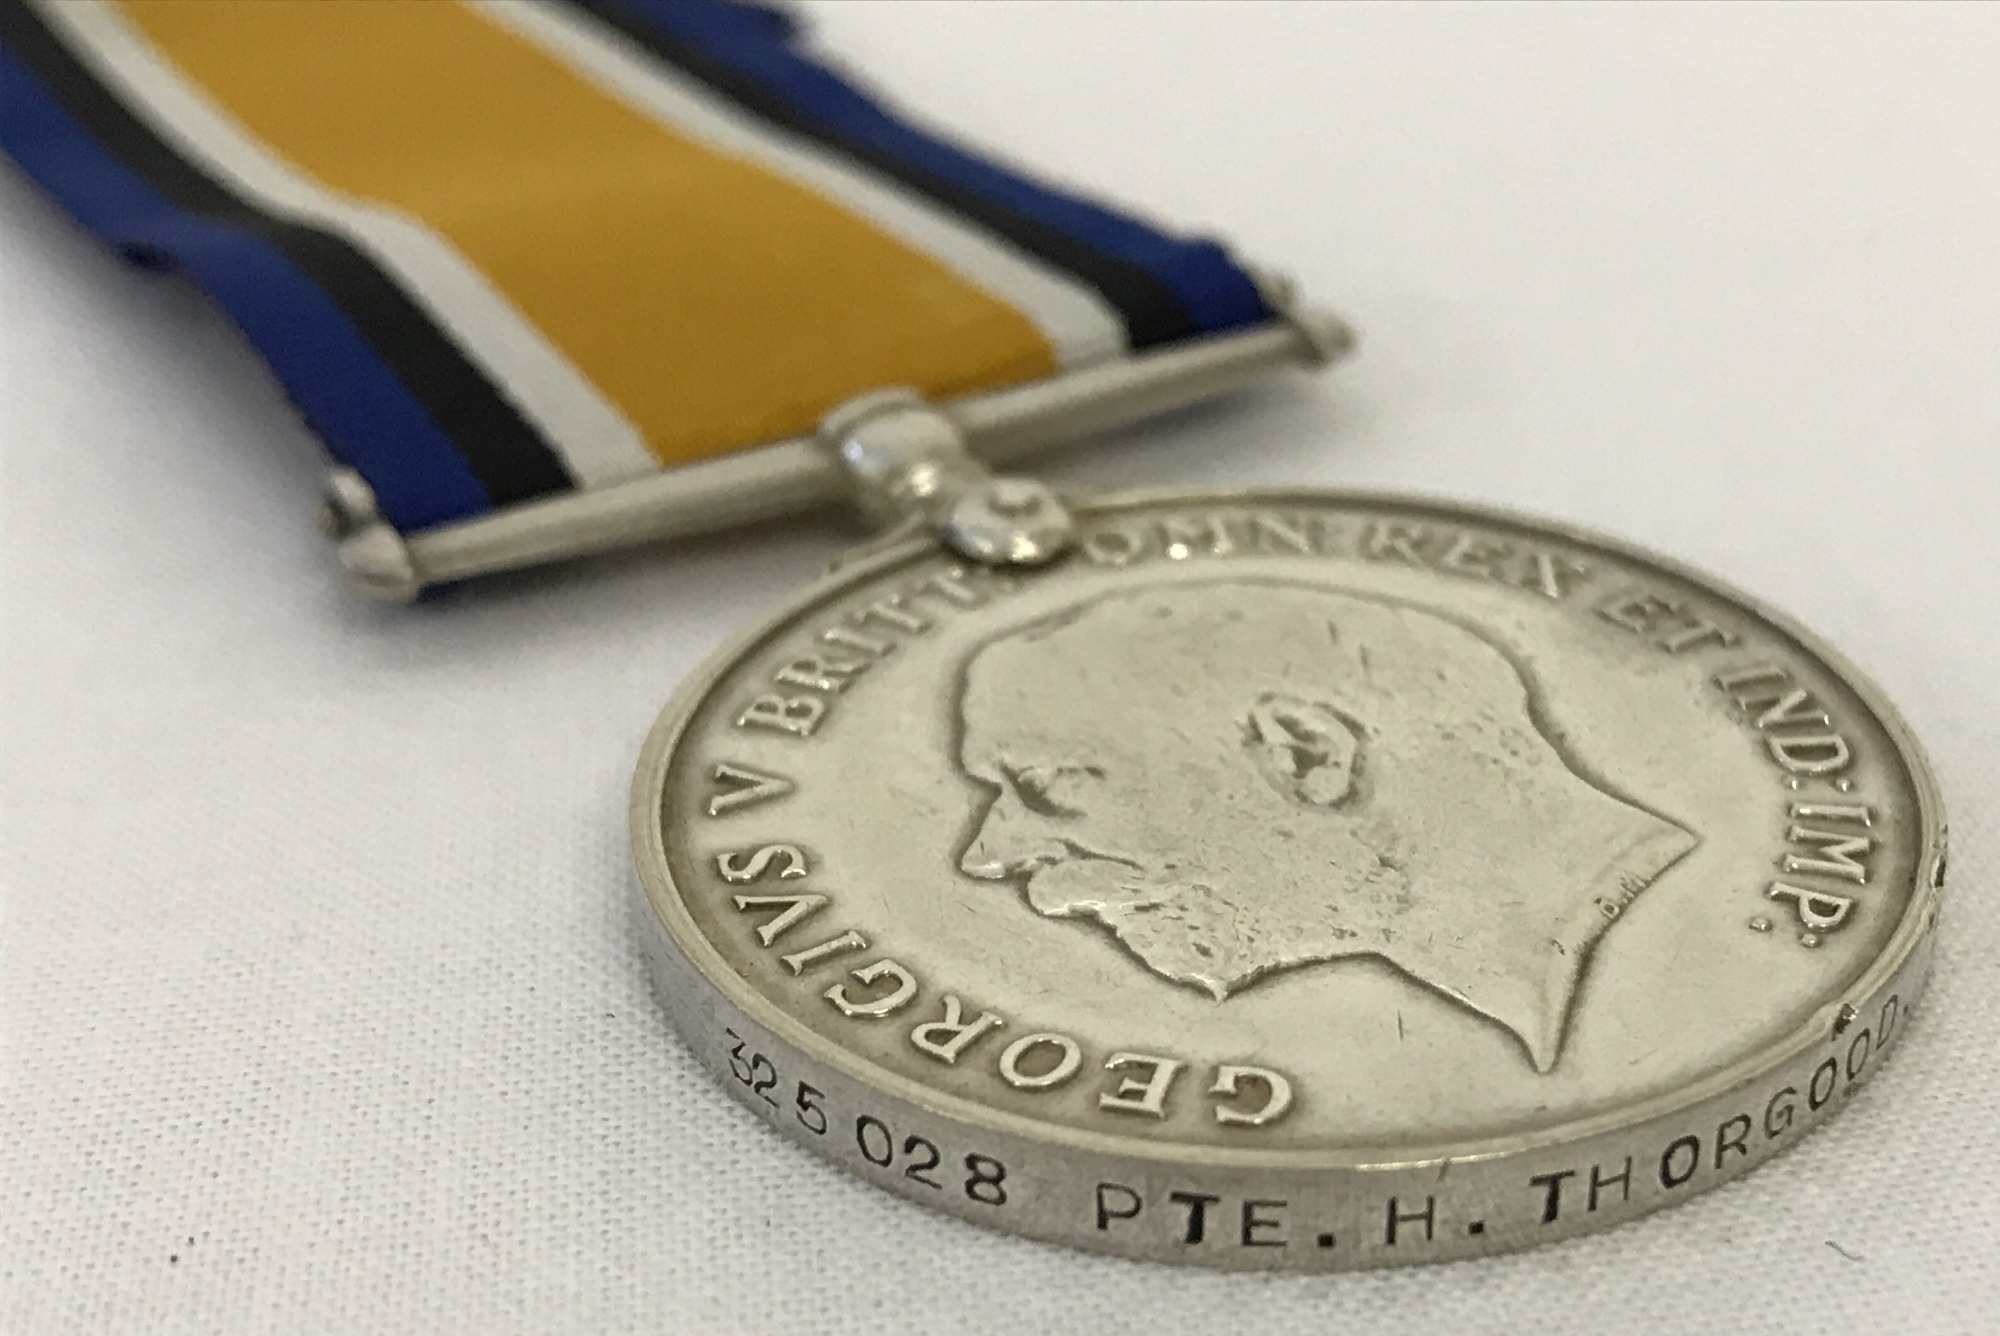 WWI British War Medal named to 325028 Pte H. Thorgood, Essex Regiment. - Image 2 of 2